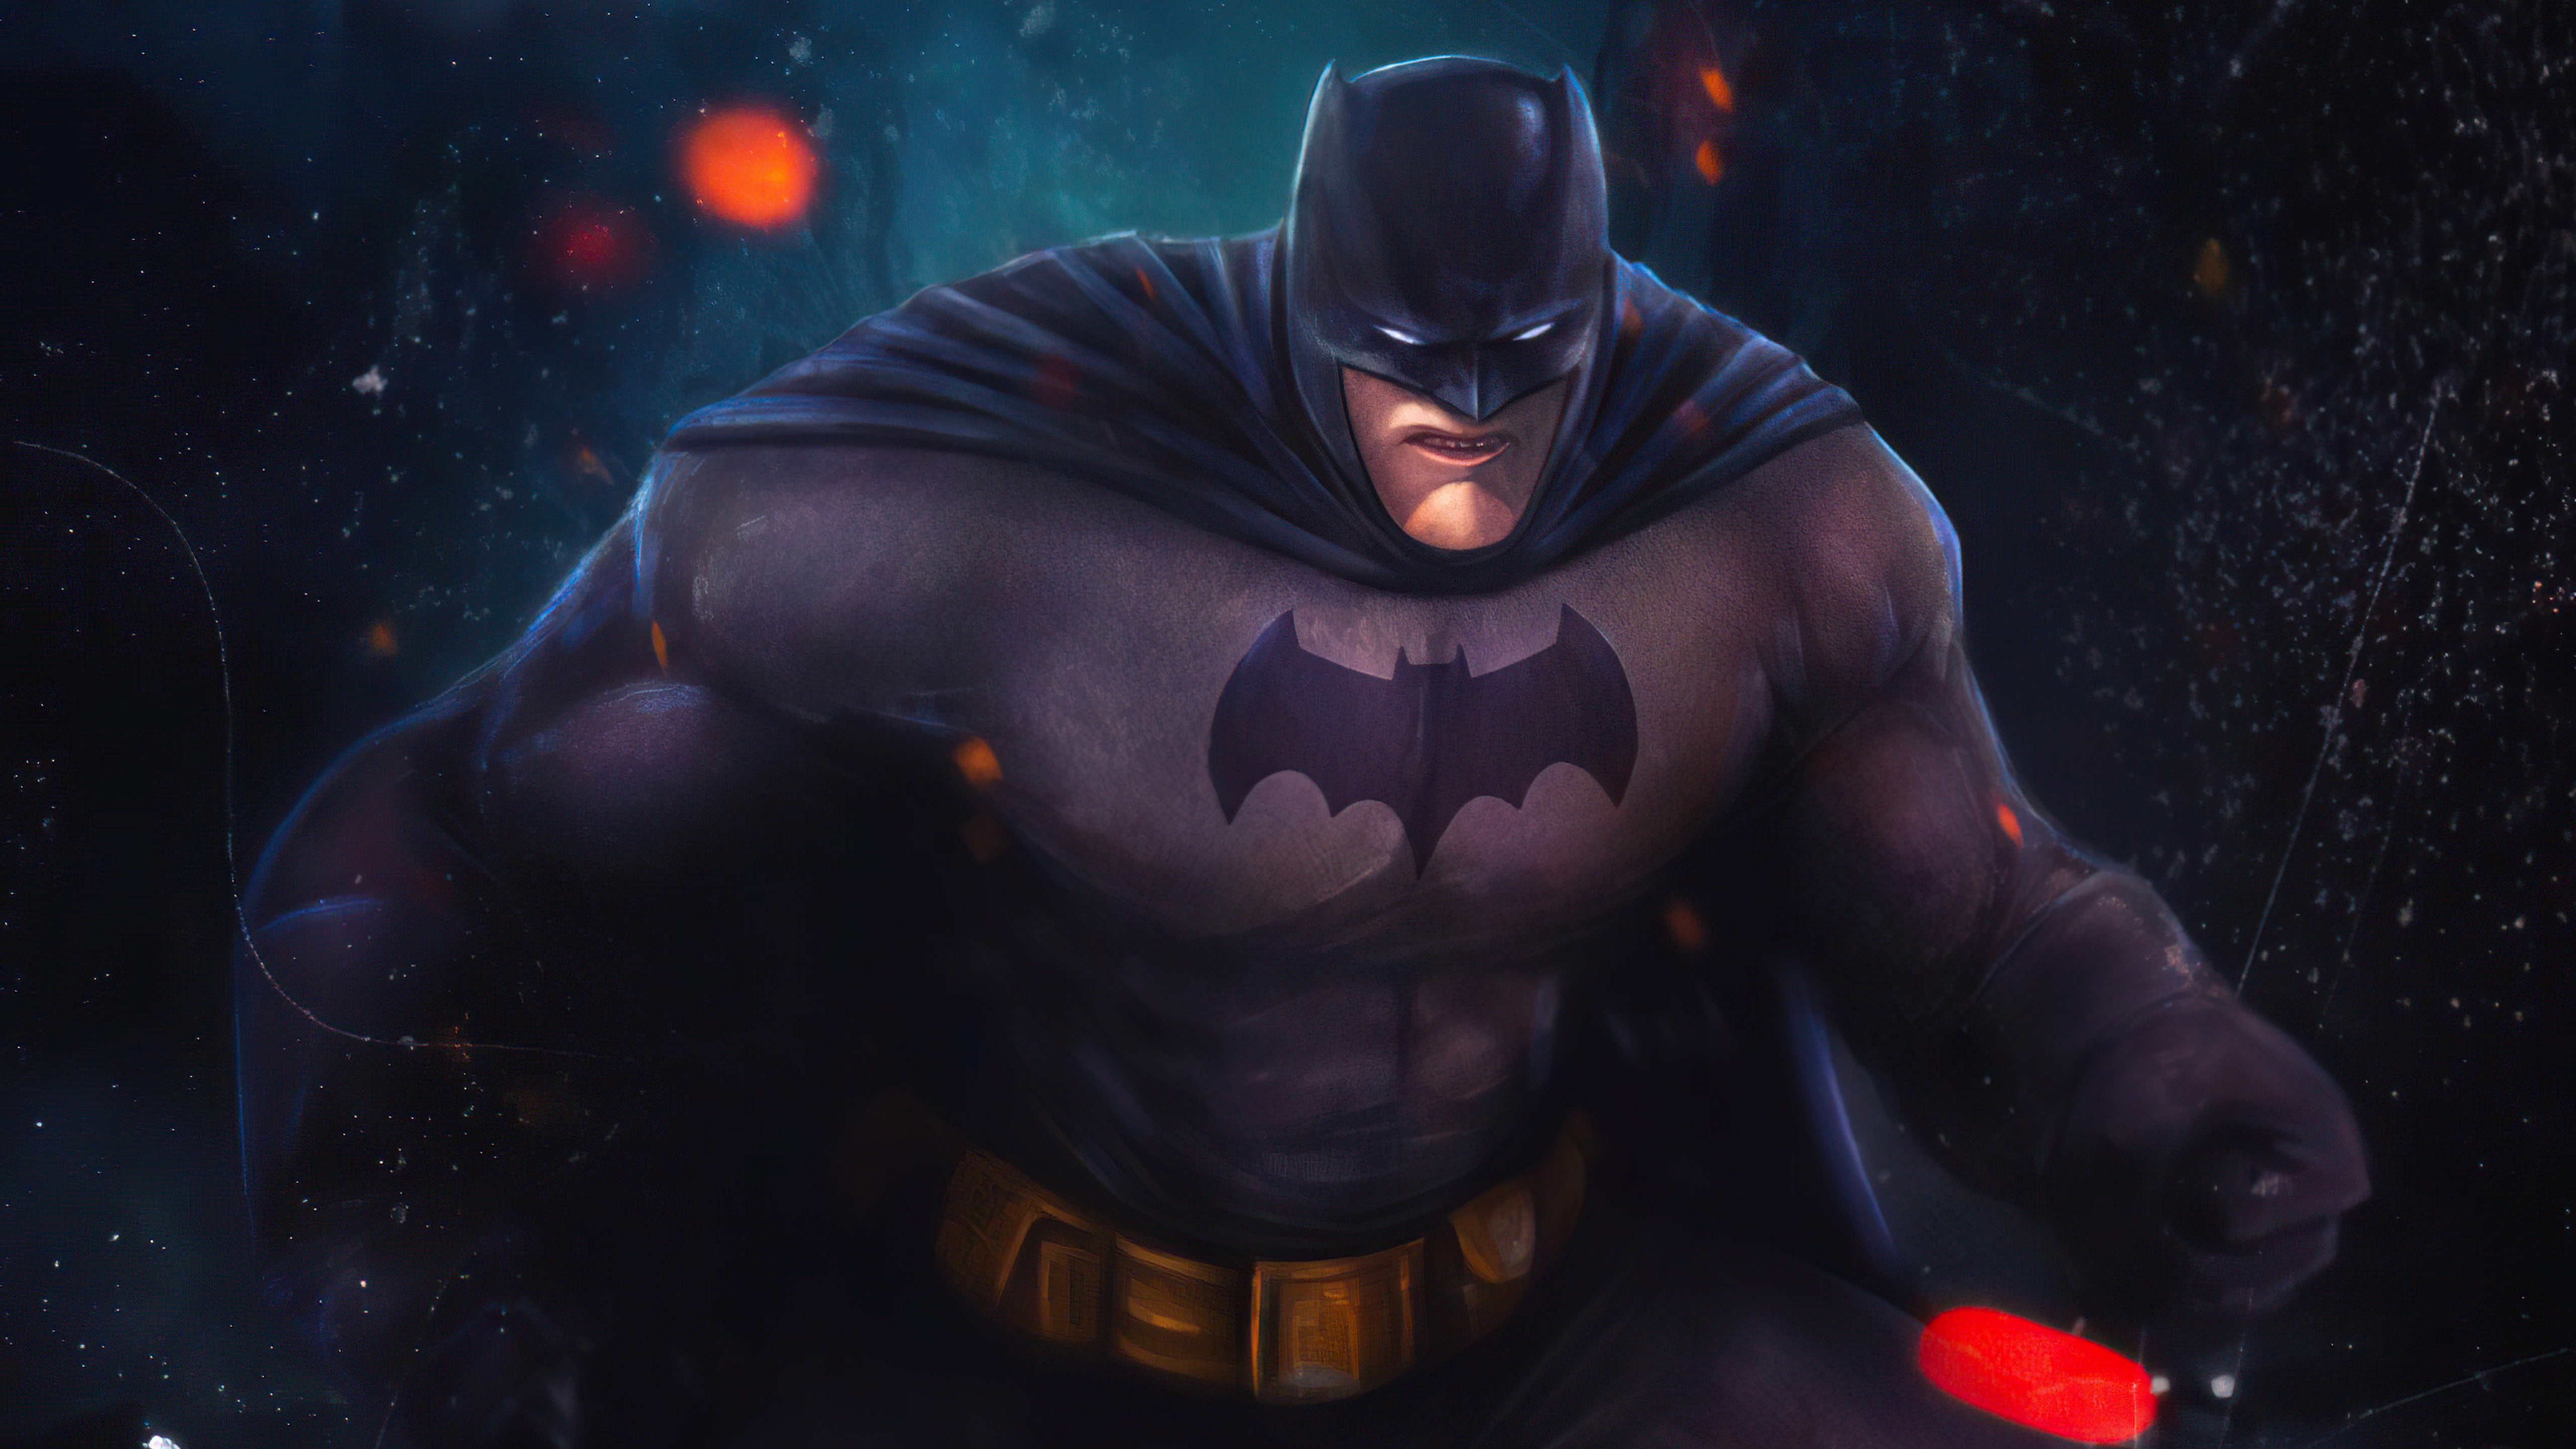 Batman 4k Ultra HD Wallpaper by ArtbyStevanChase